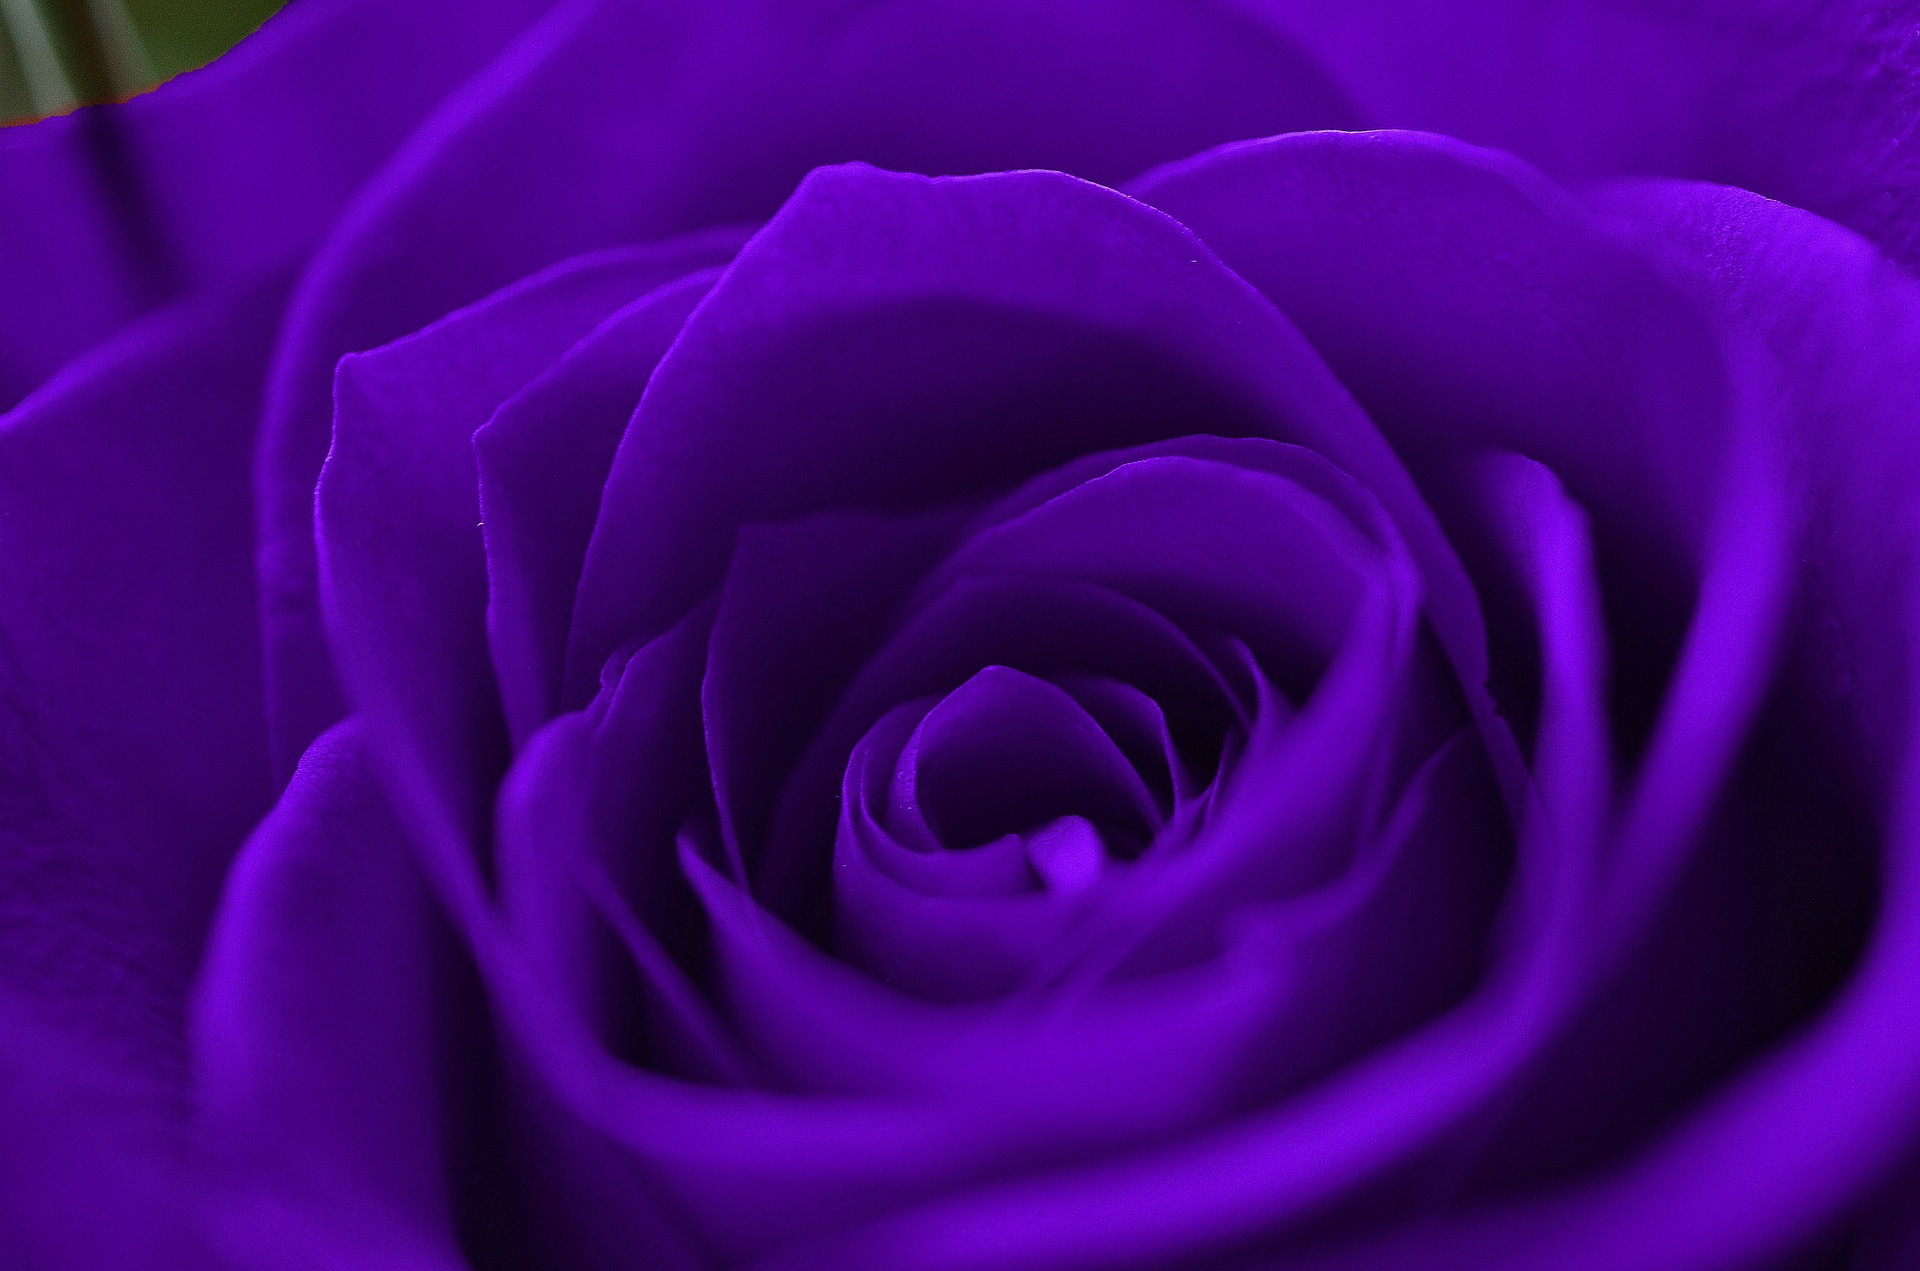 [49+] Purple Rose Wallpaper for Desktop | WallpaperSafari.com